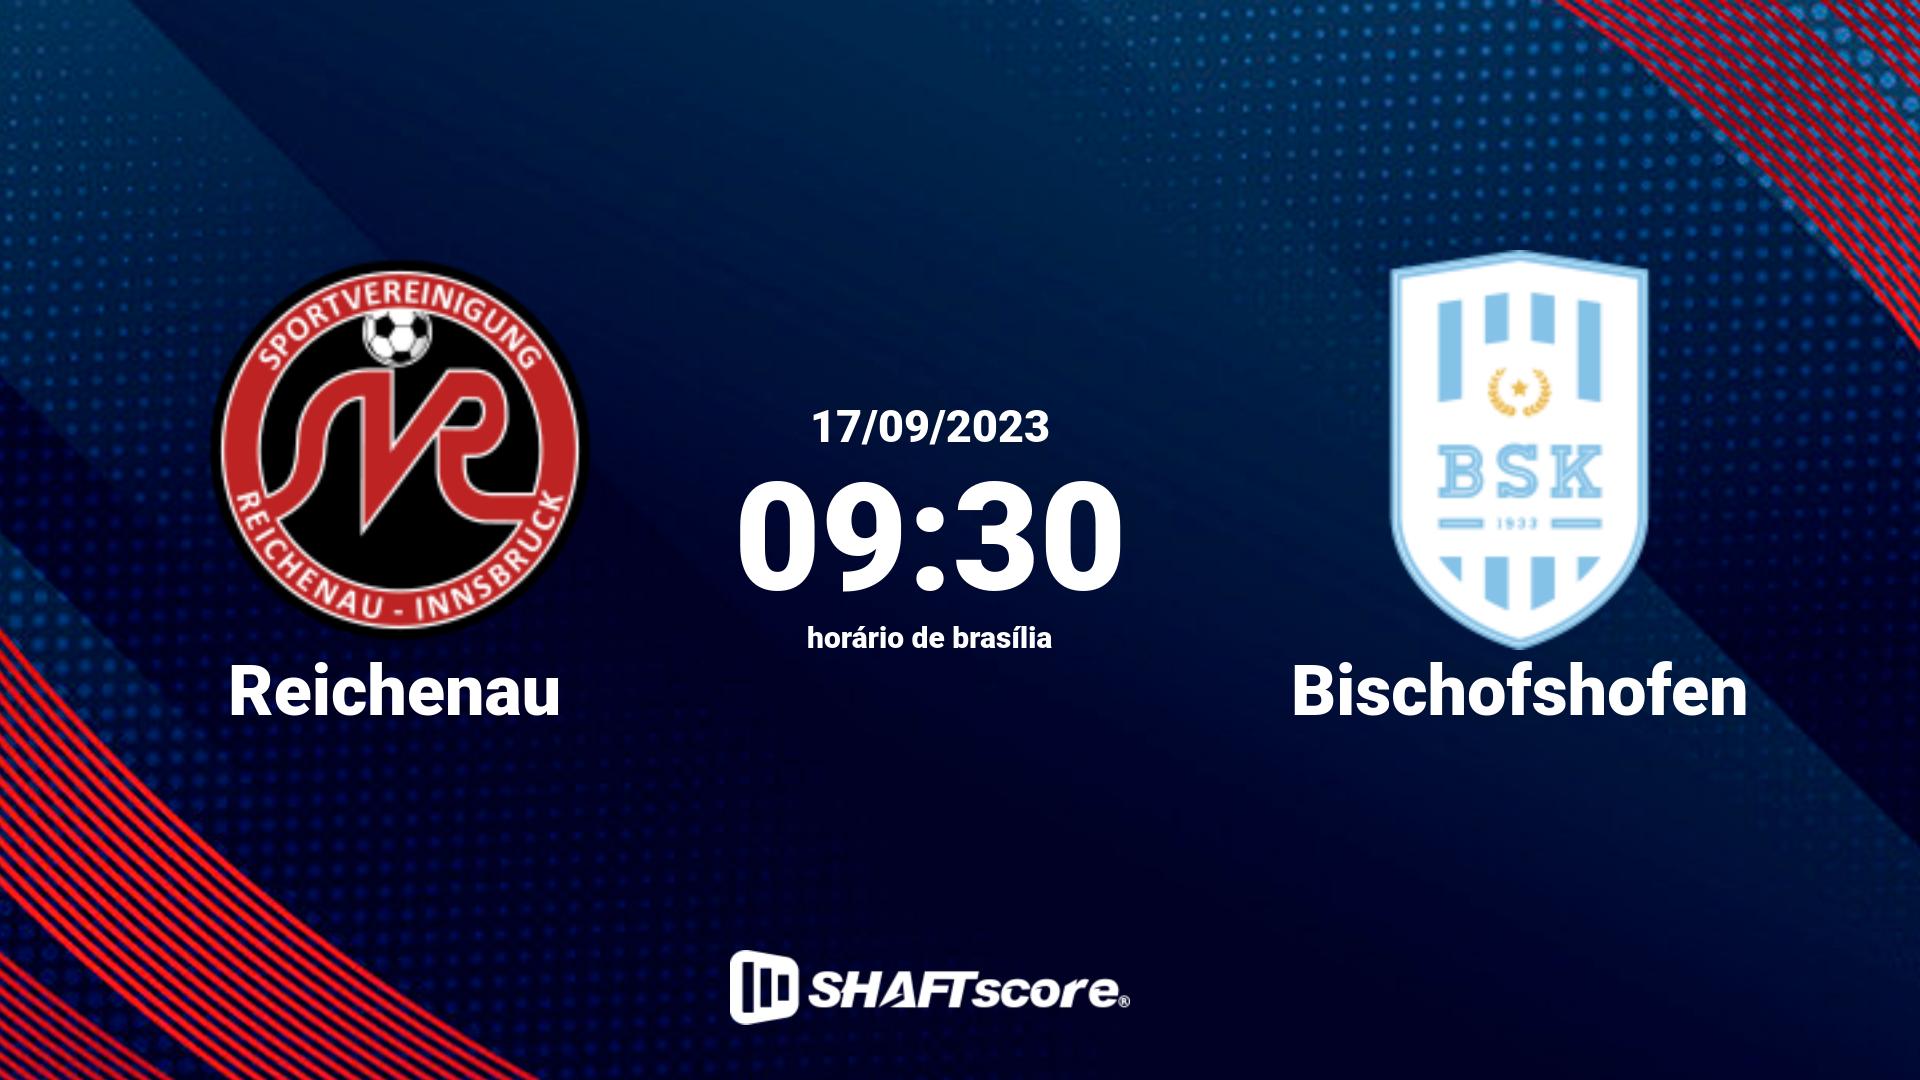 Estatísticas do jogo Reichenau vs Bischofshofen 17.09 09:30